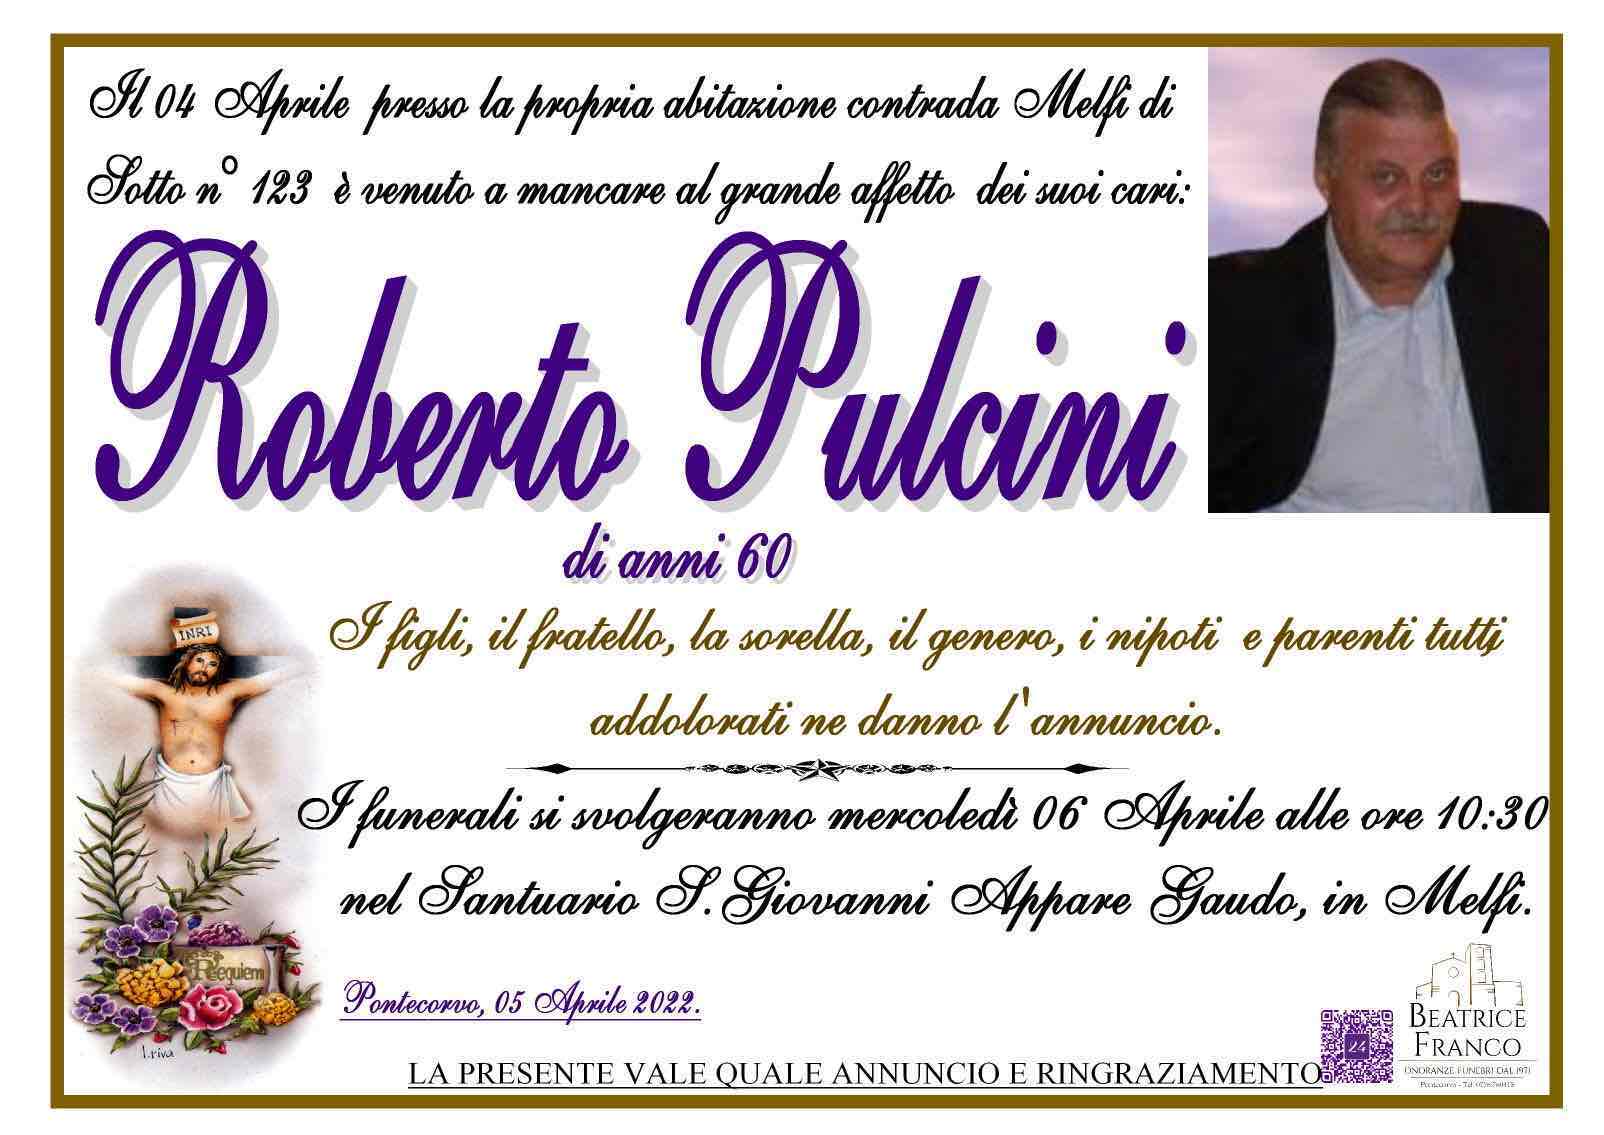 Roberto Pulcini